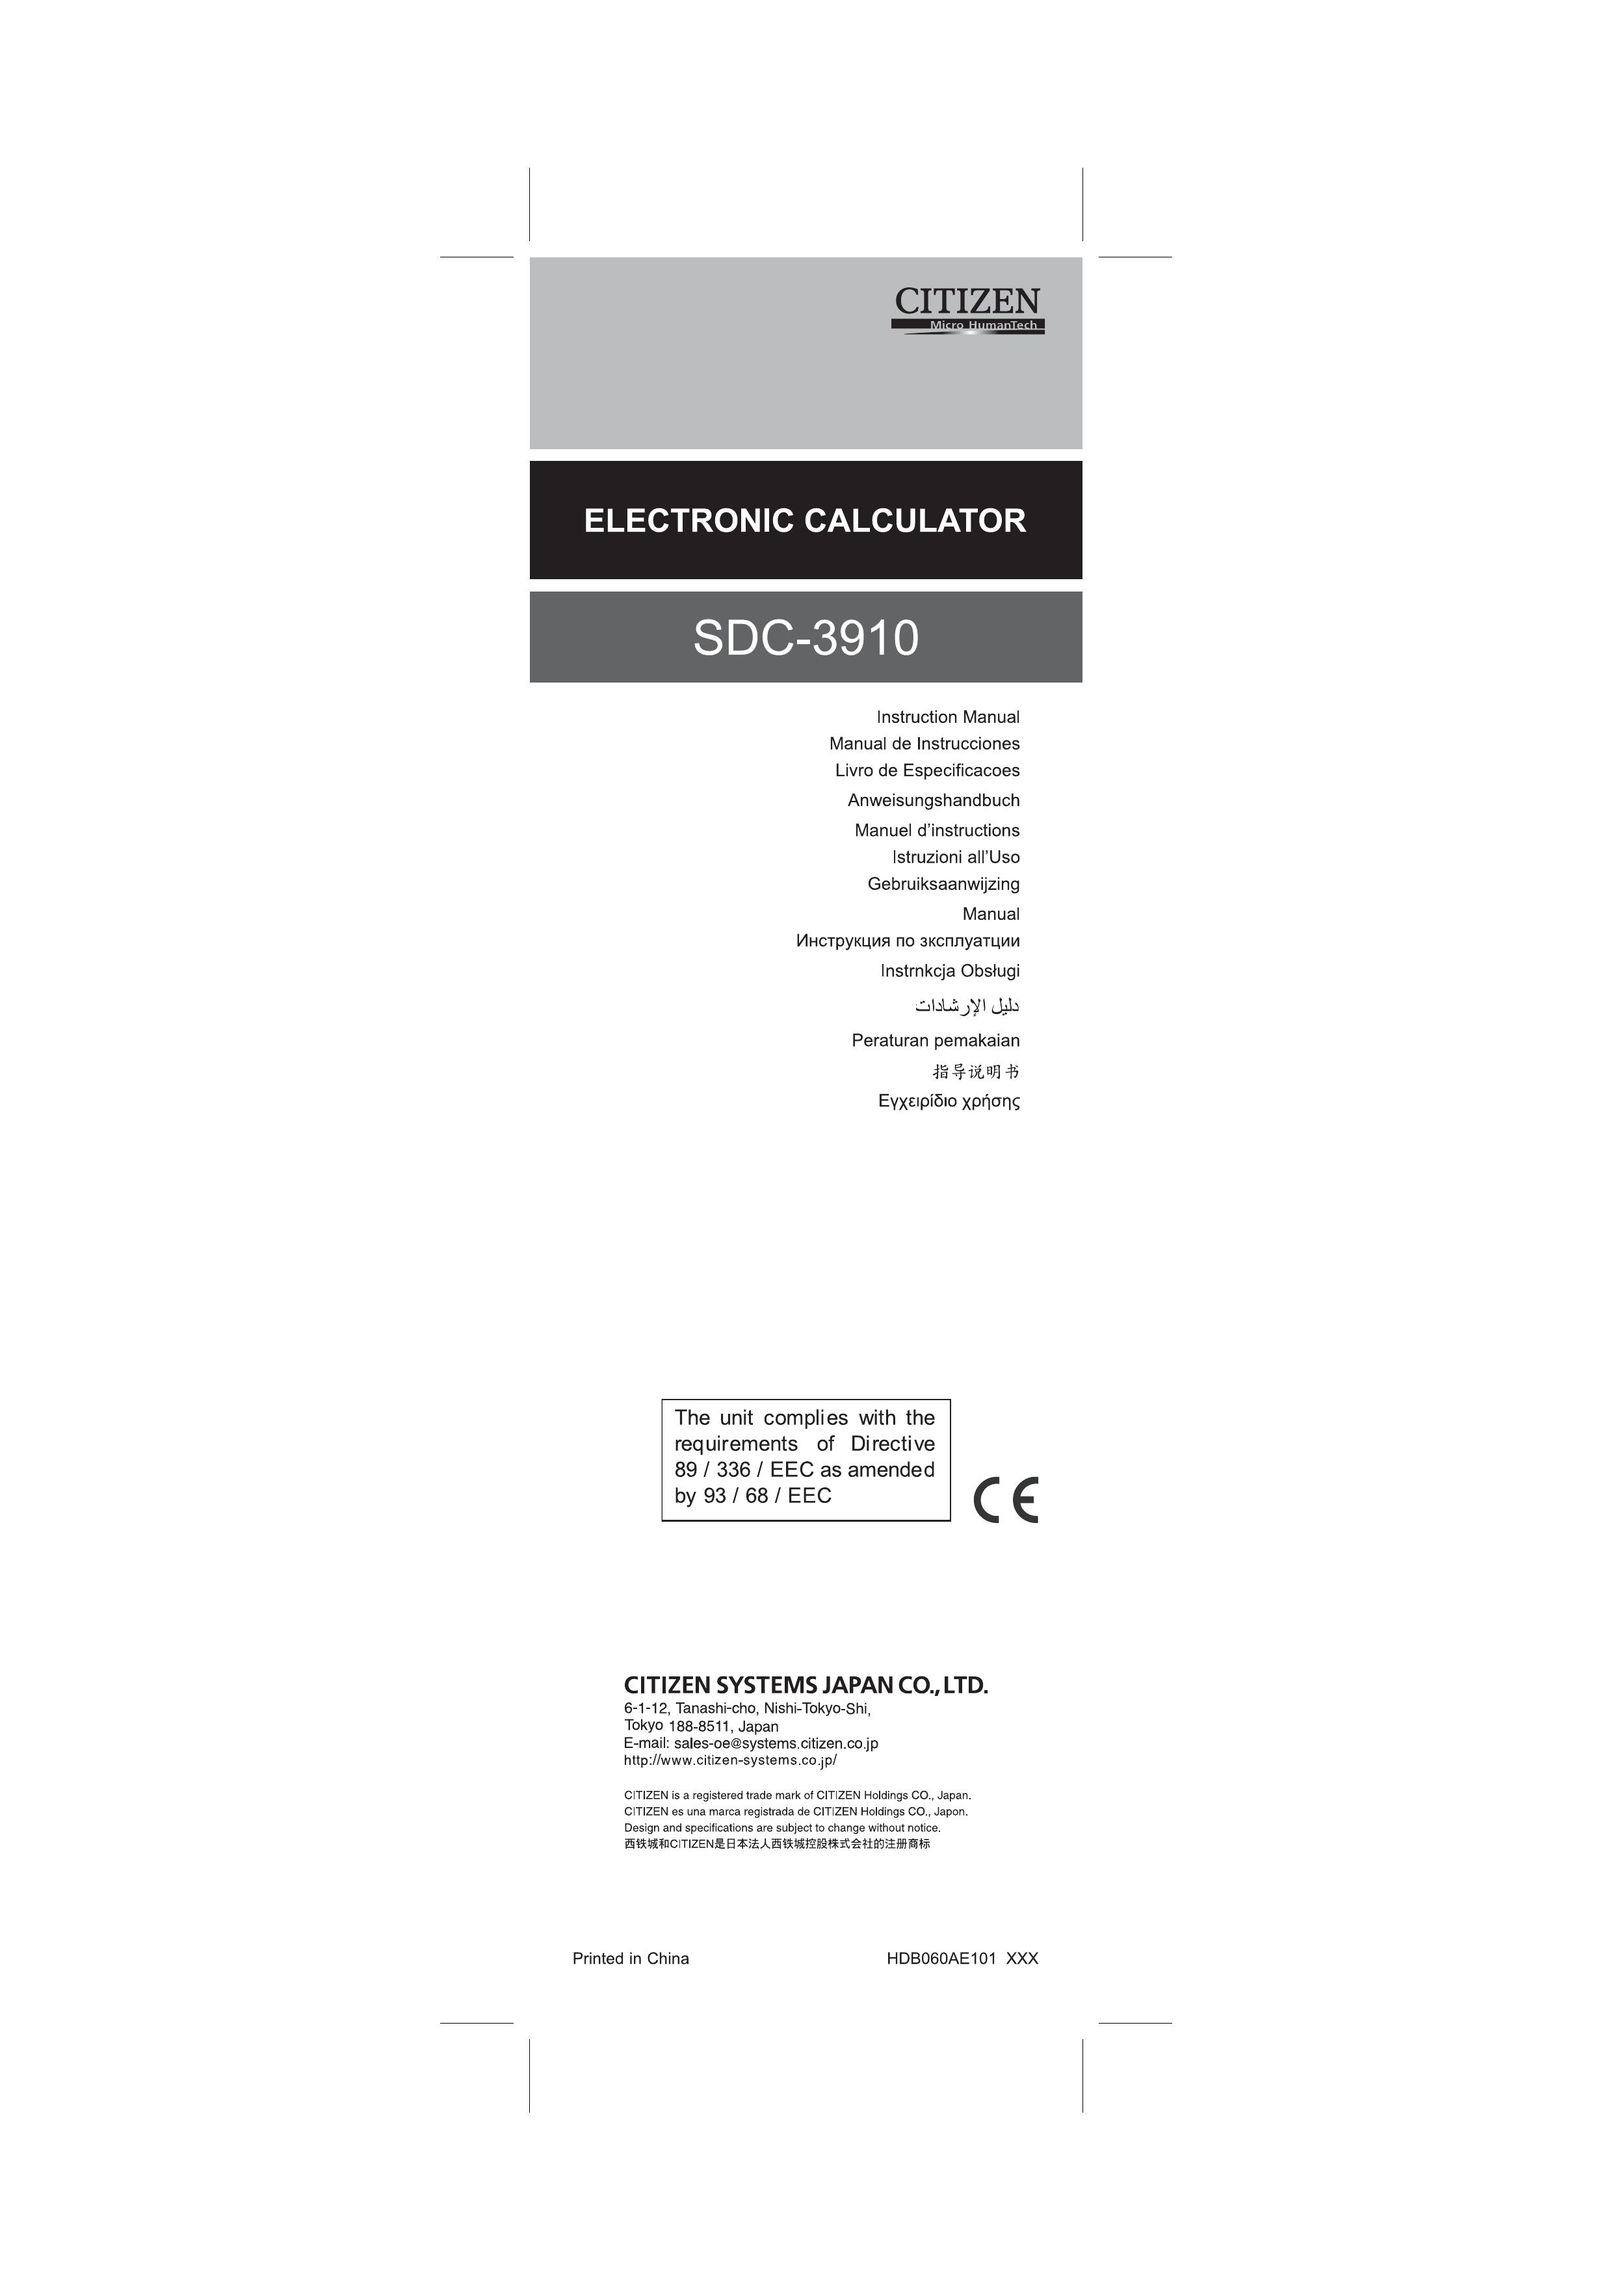 Citizen SDC-3910 Calculator User Manual